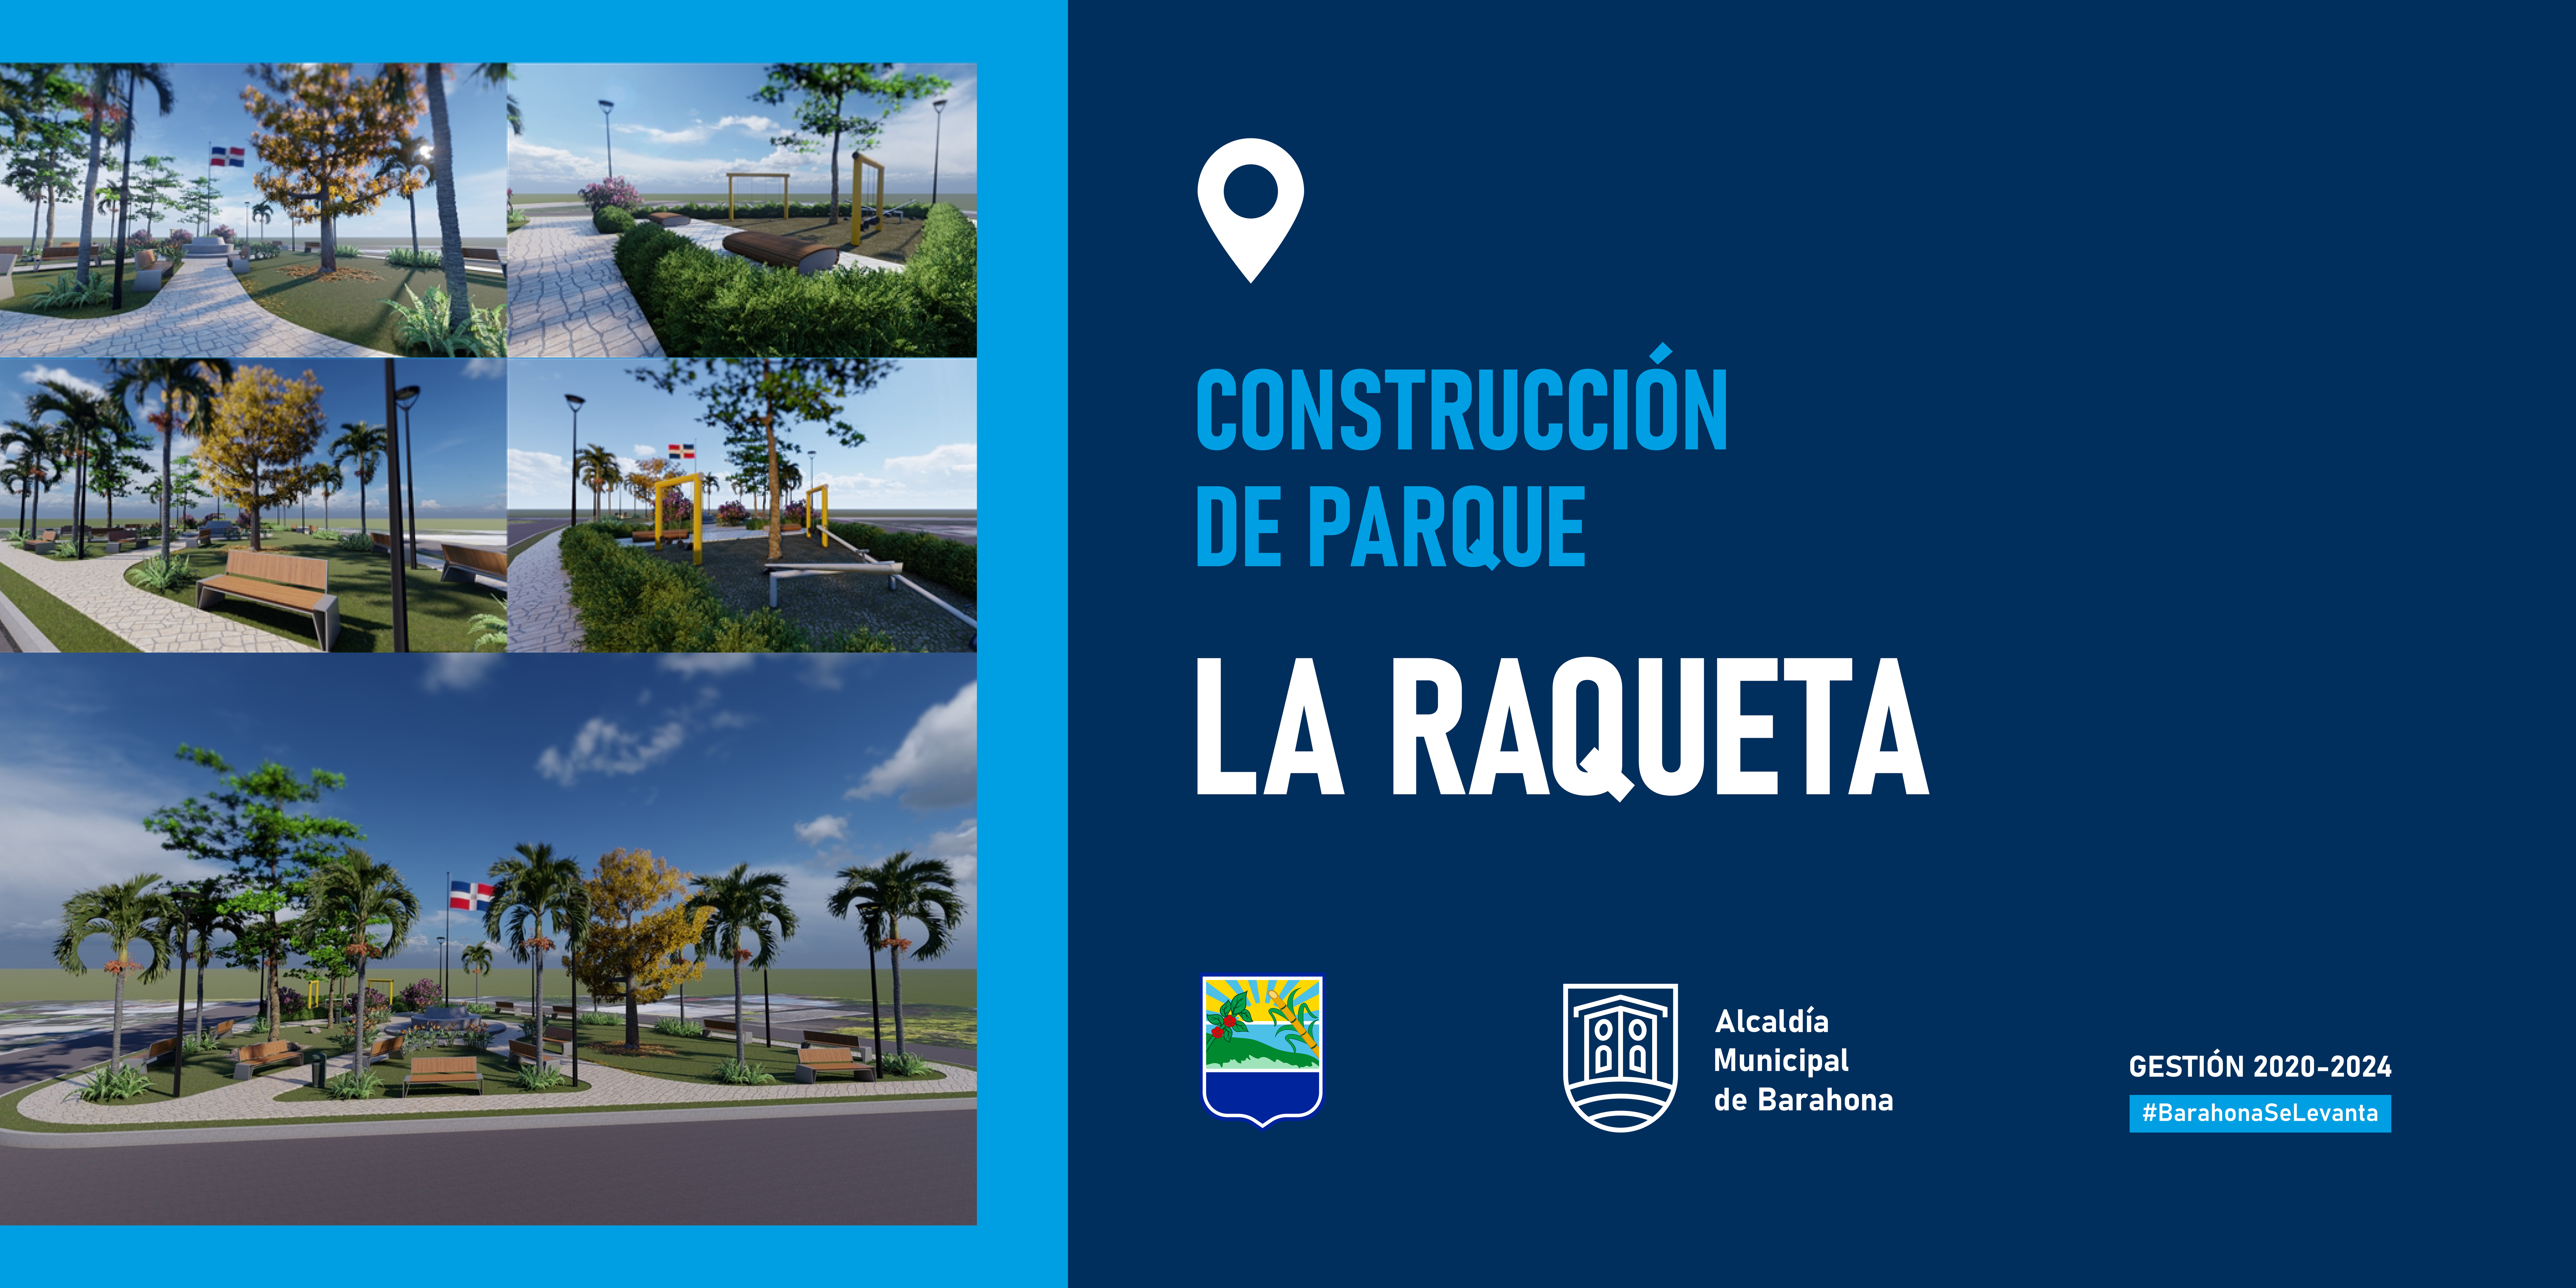 Alcaldía de Barahona Convoca Proceso Comparación de Precios para la Construcción Parque La Raqueta